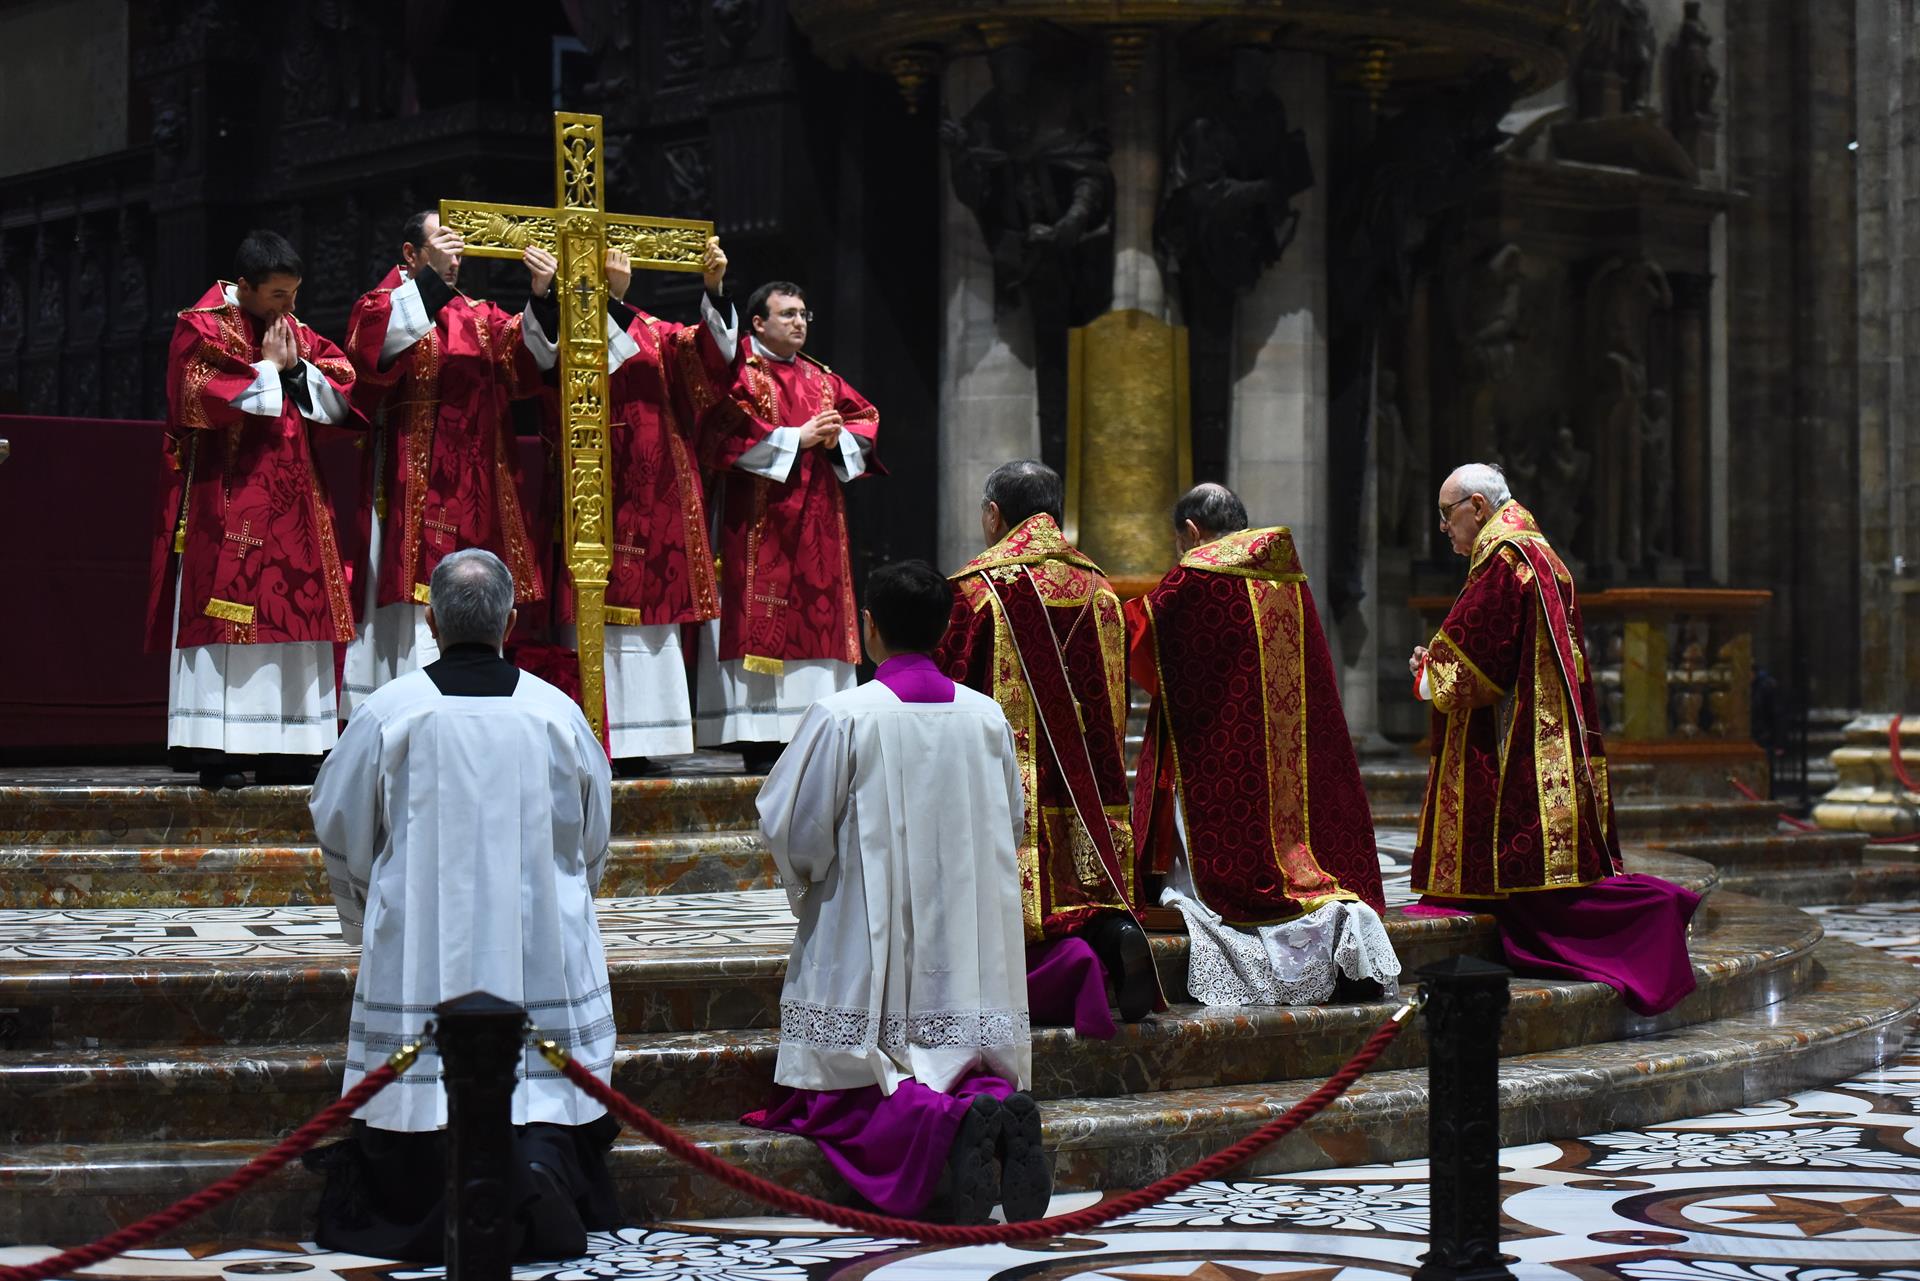 La celebrazione del Venerdì santo in Duomo - Duomo di Milano SITO UFFICIALE